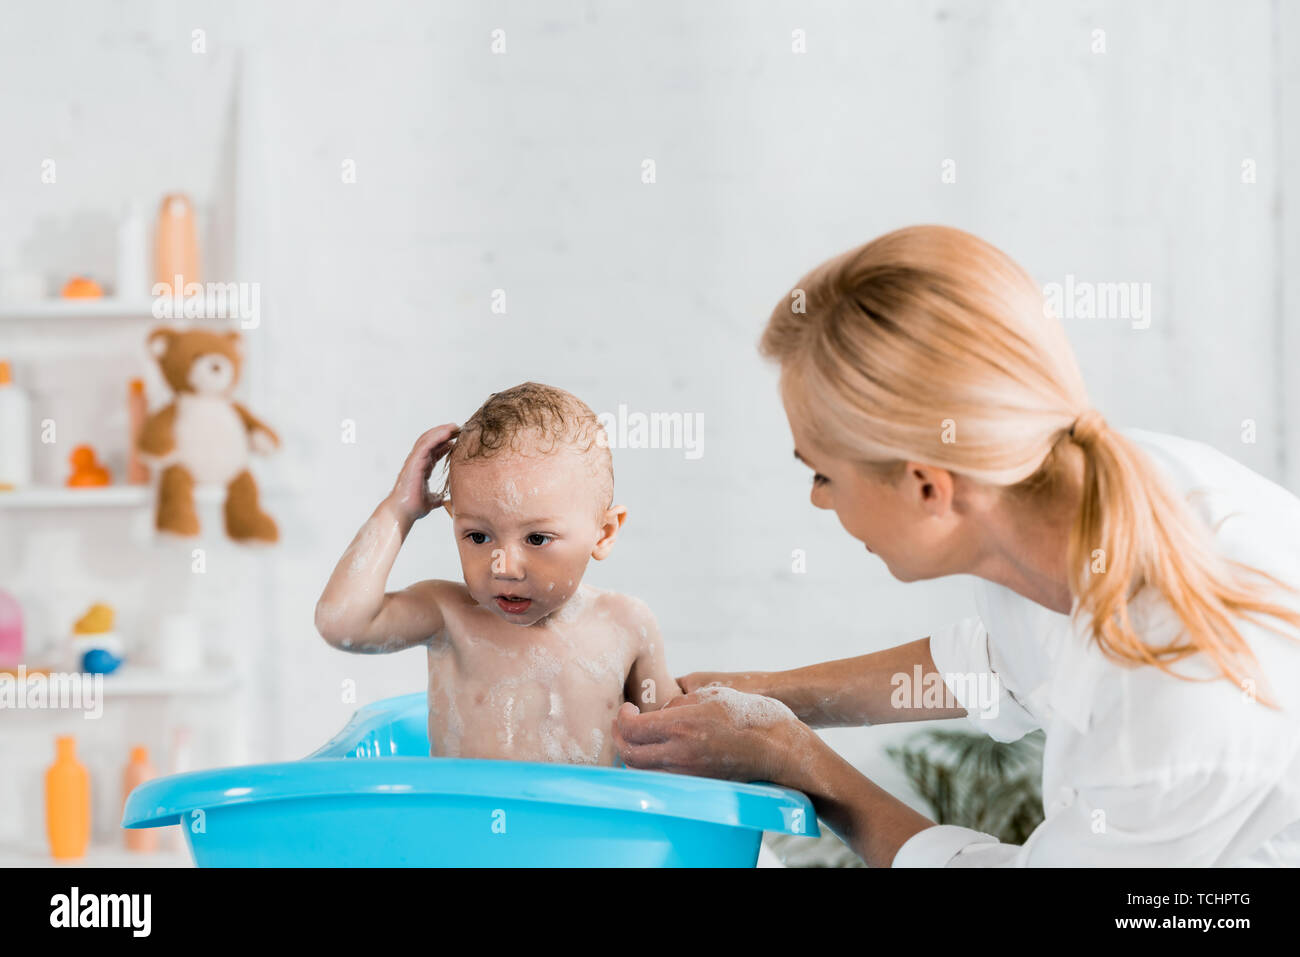 Мама ванна 18. Помыла сына в ванной. Мама с сыном играют в ванной. Семейная эмоция радость в ванной комнате. Мама погружает сына в ванну.